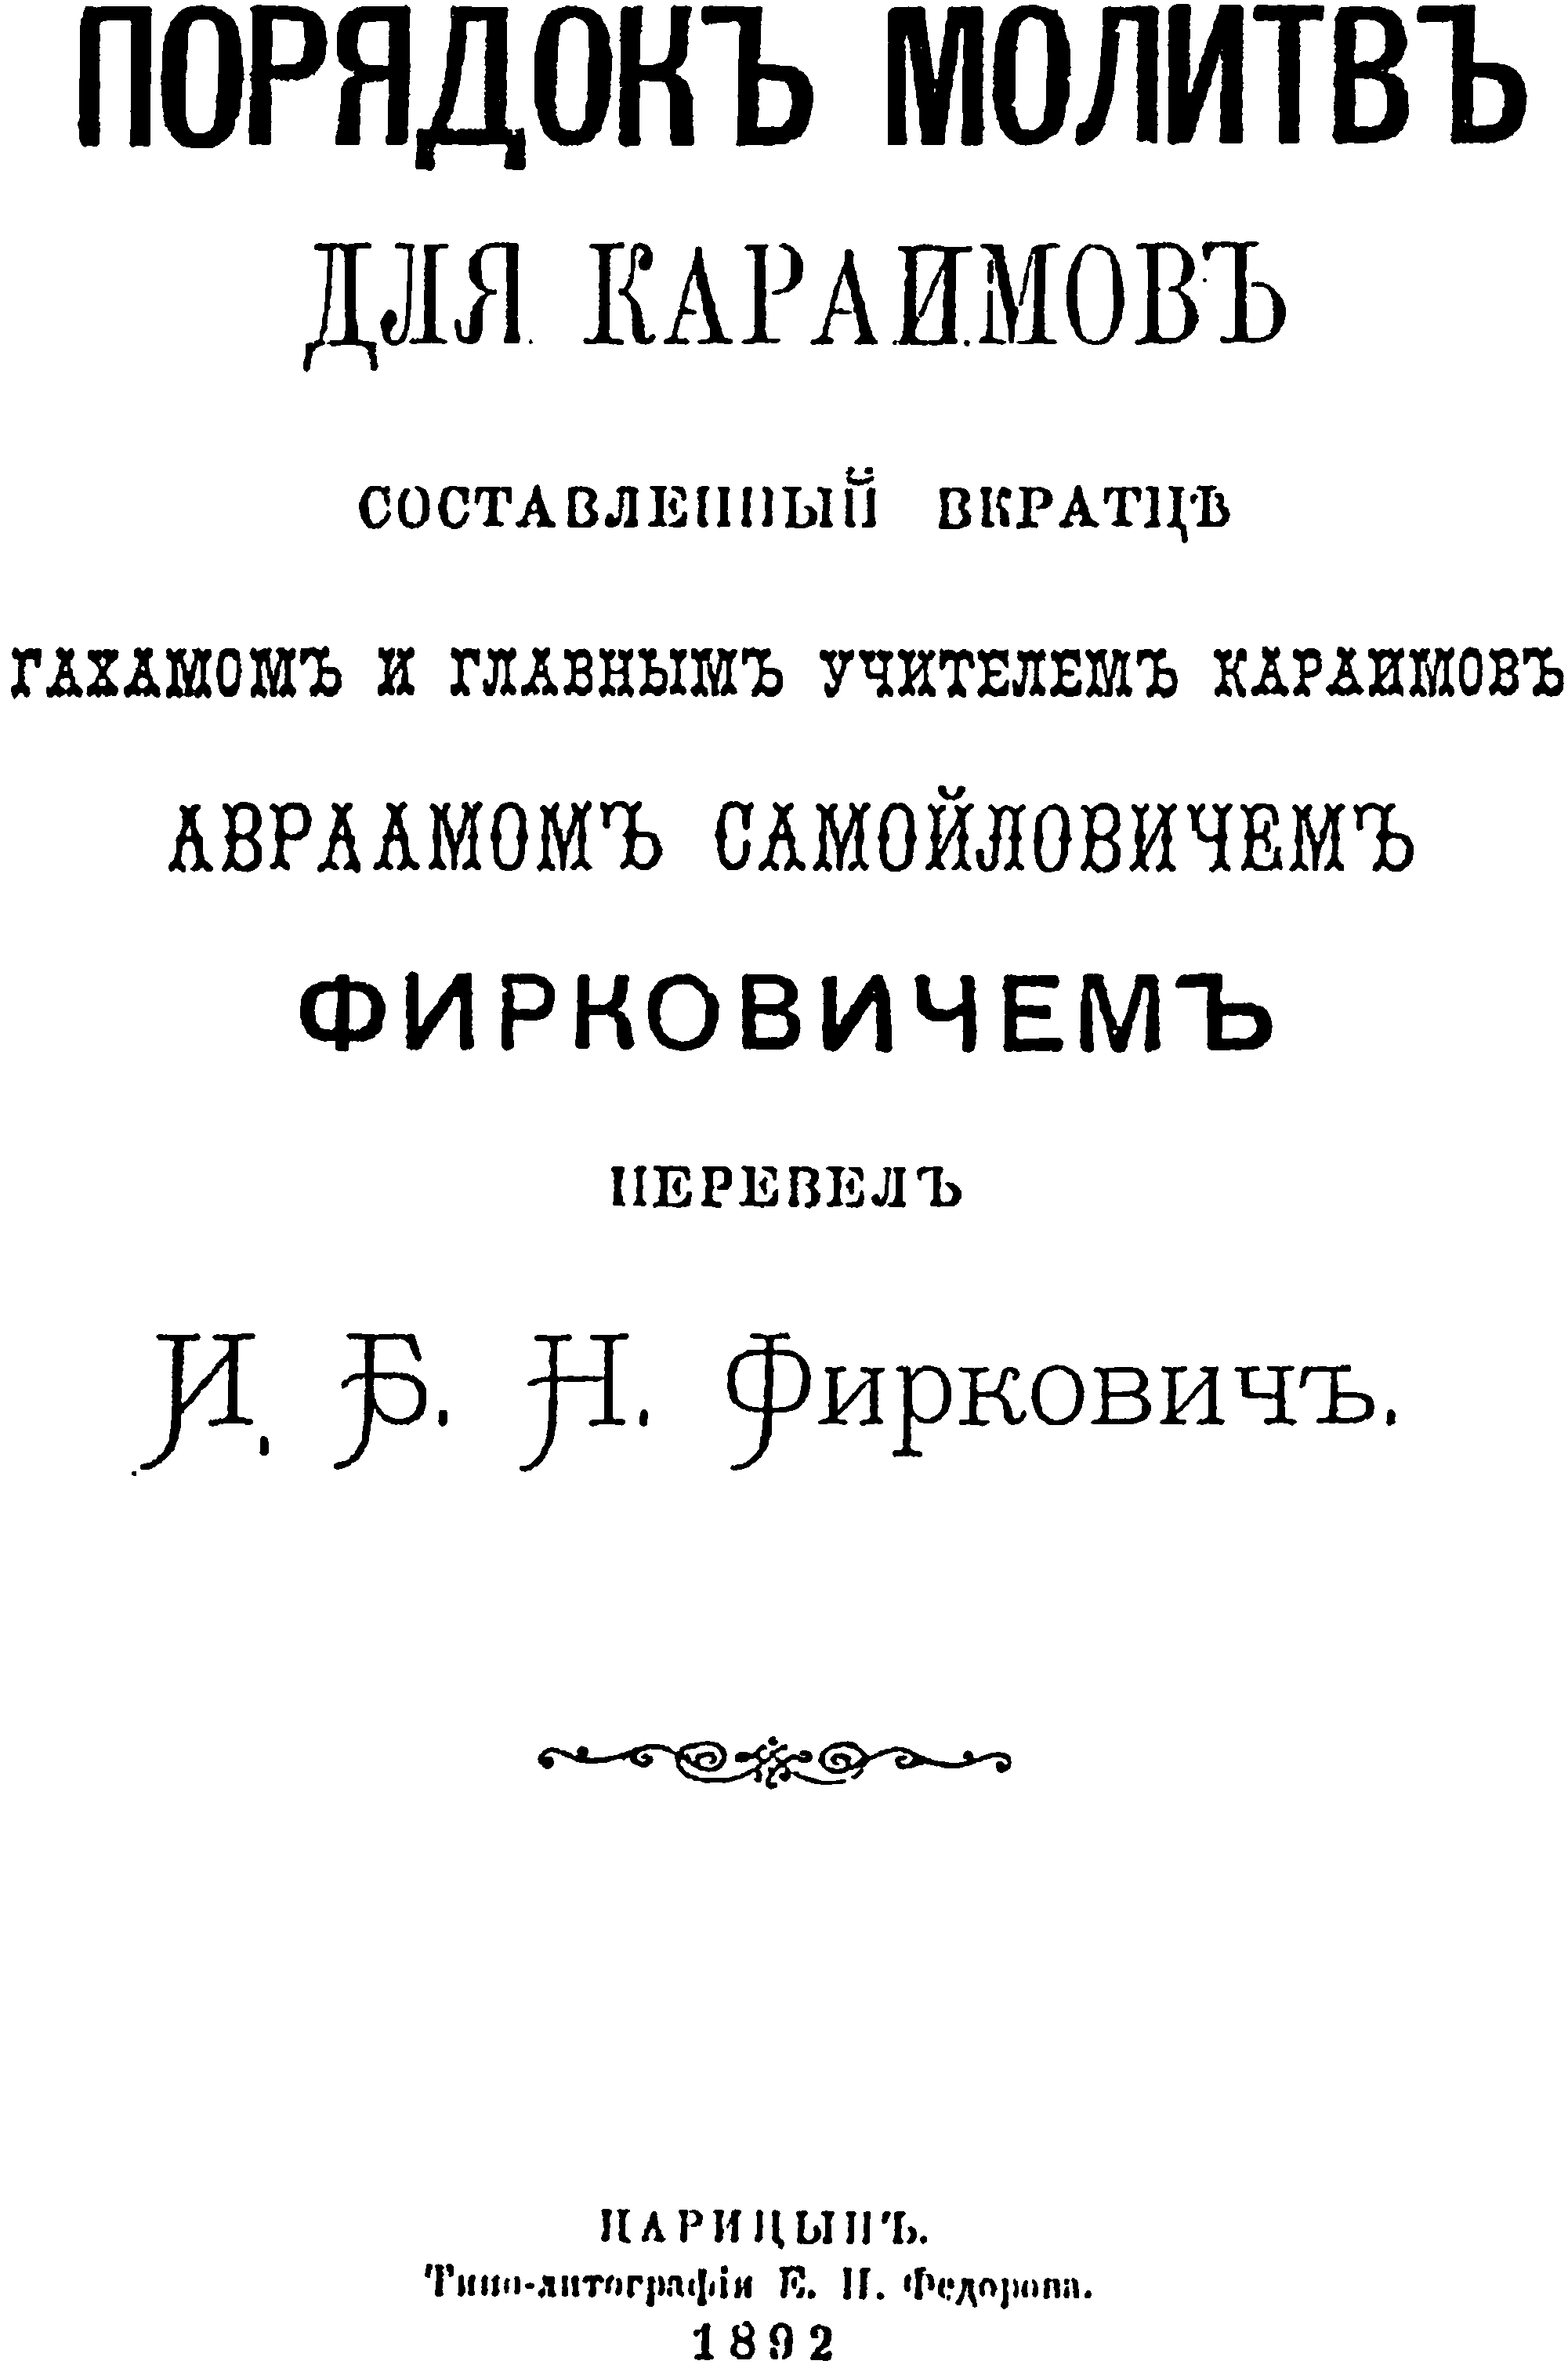 Караимский молитвенник на русском языке, использовавшийся преимущественно российскими субботниками (Царицын, 1892)